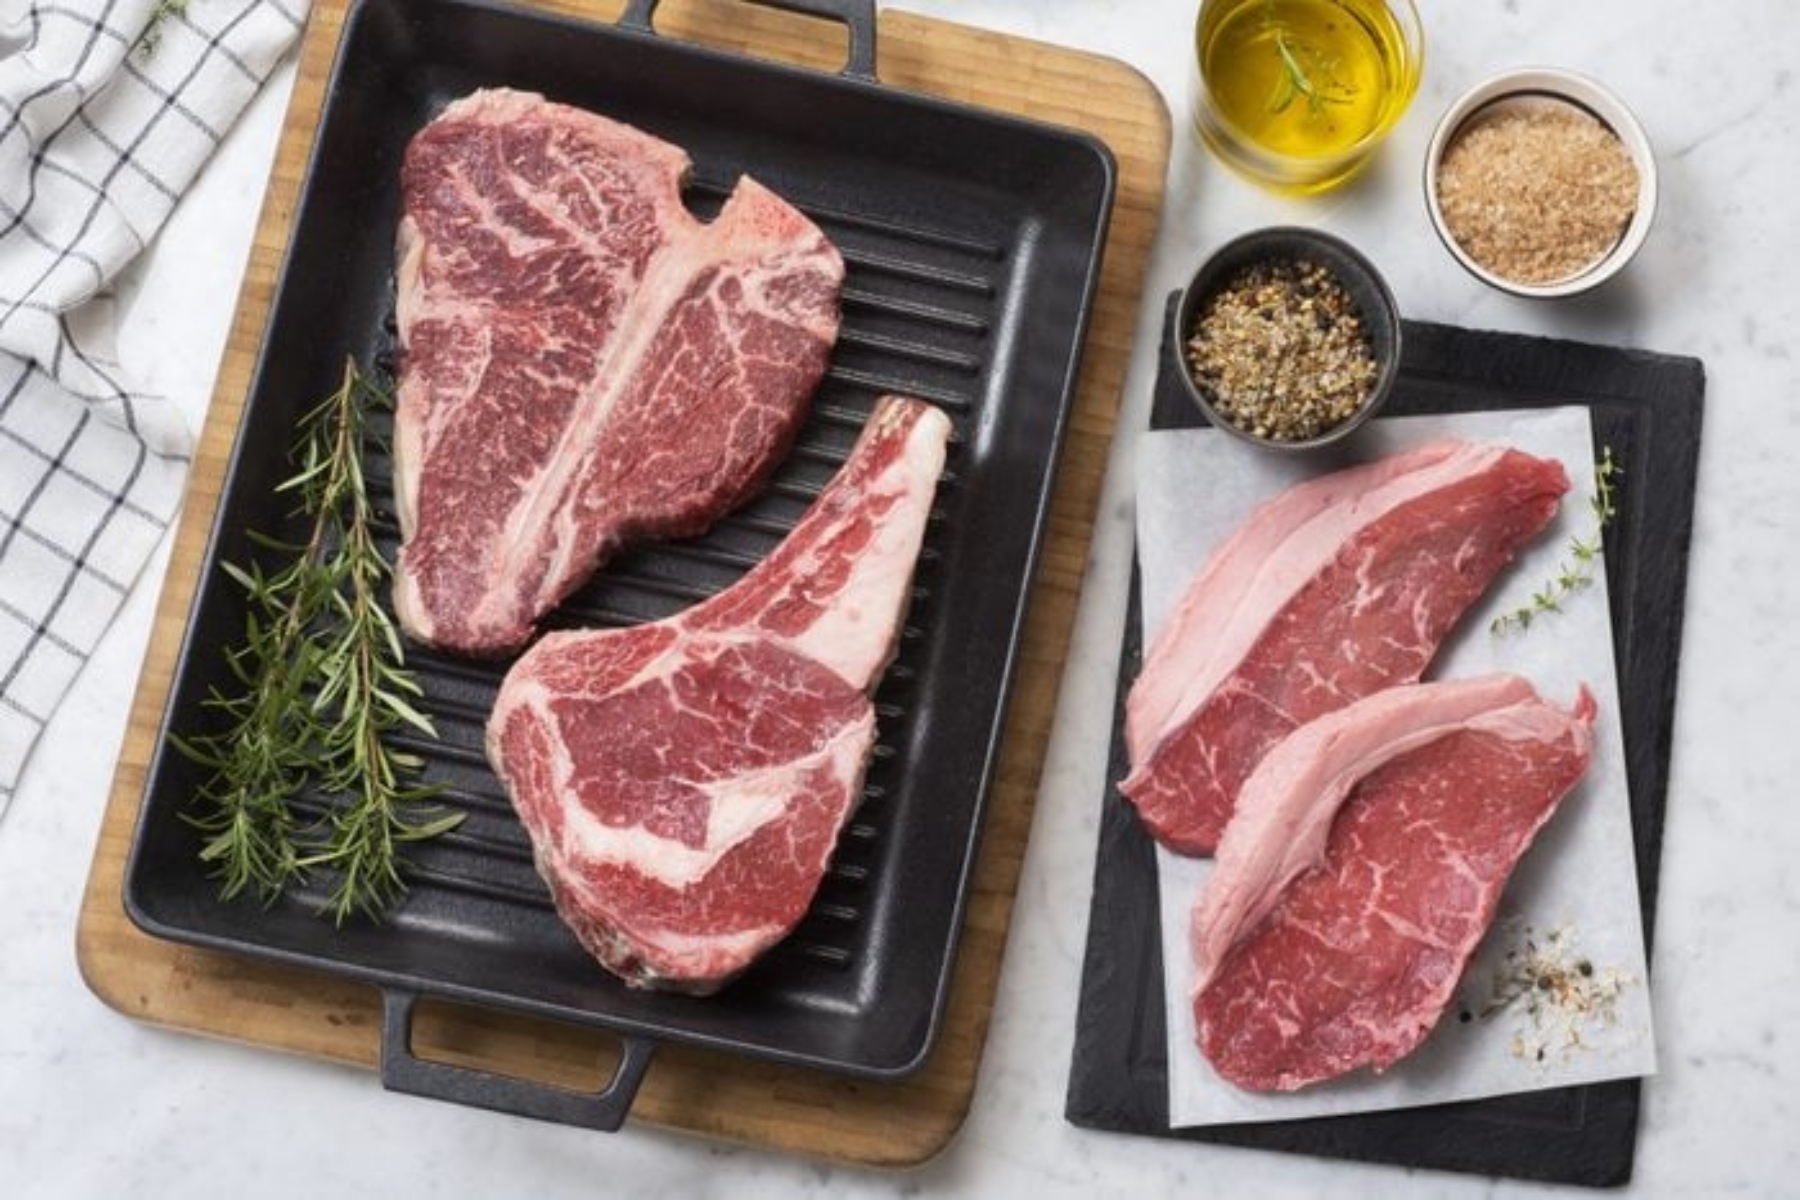 Ασφάλεια τροφίμων κρέας: Η επιστήμη του να μην πλένουμε το κρέας πριν το μαγείρεμα